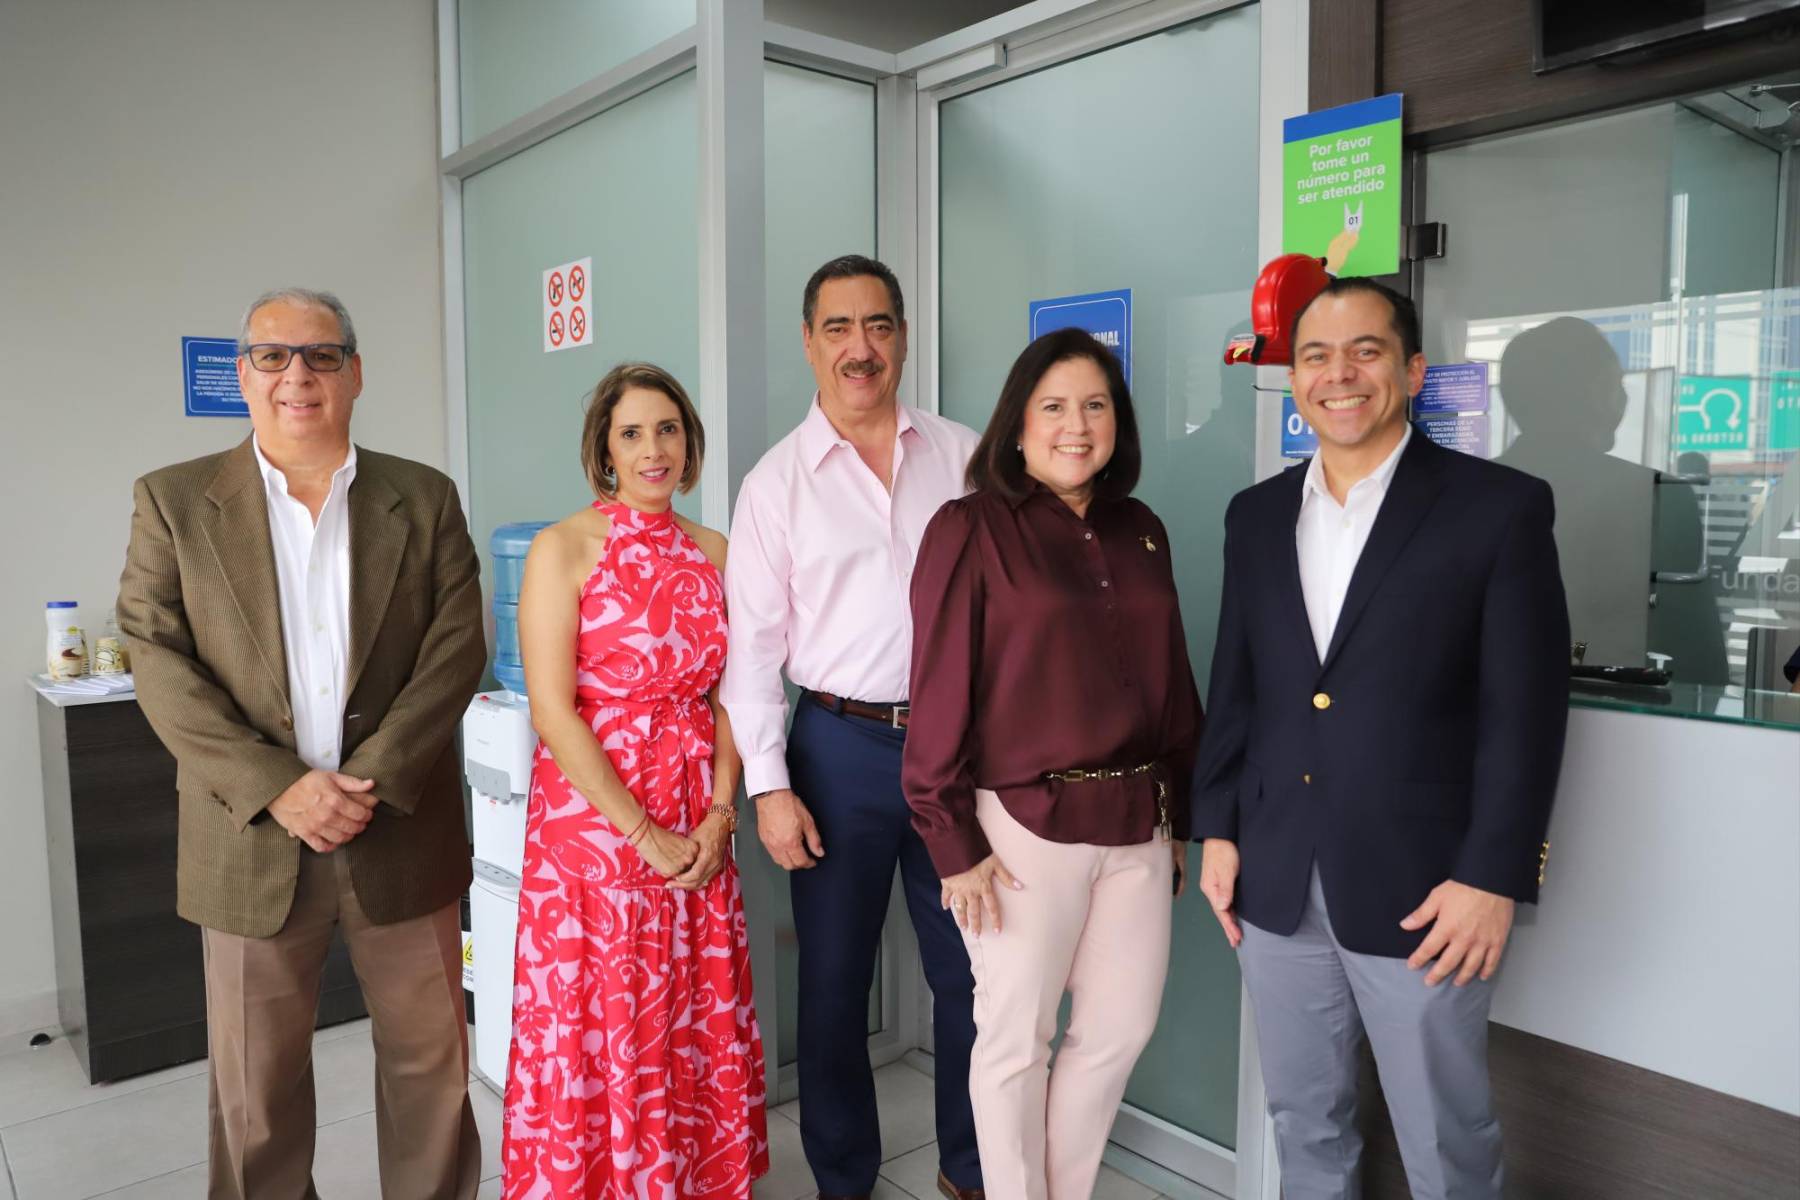 Fotogalería: Laboratorio Bueso Arias inaugura nueva sucursal en Tegucigalpa